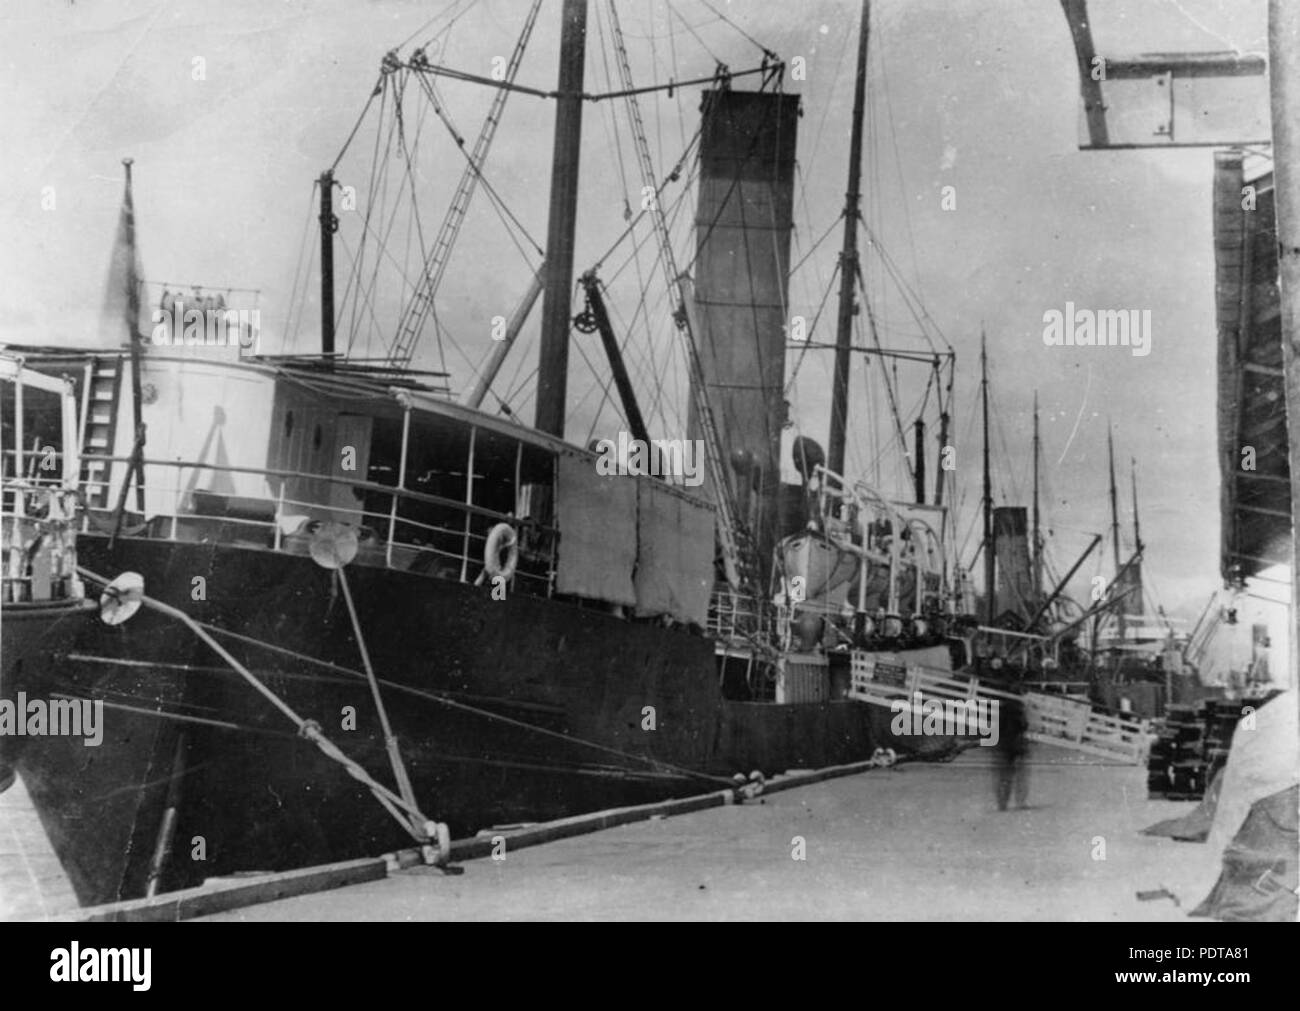 271 69771 StateLibQld 1 quais de Cairns avec steamships ligotée et passerelle en place, ca. 1920 Banque D'Images